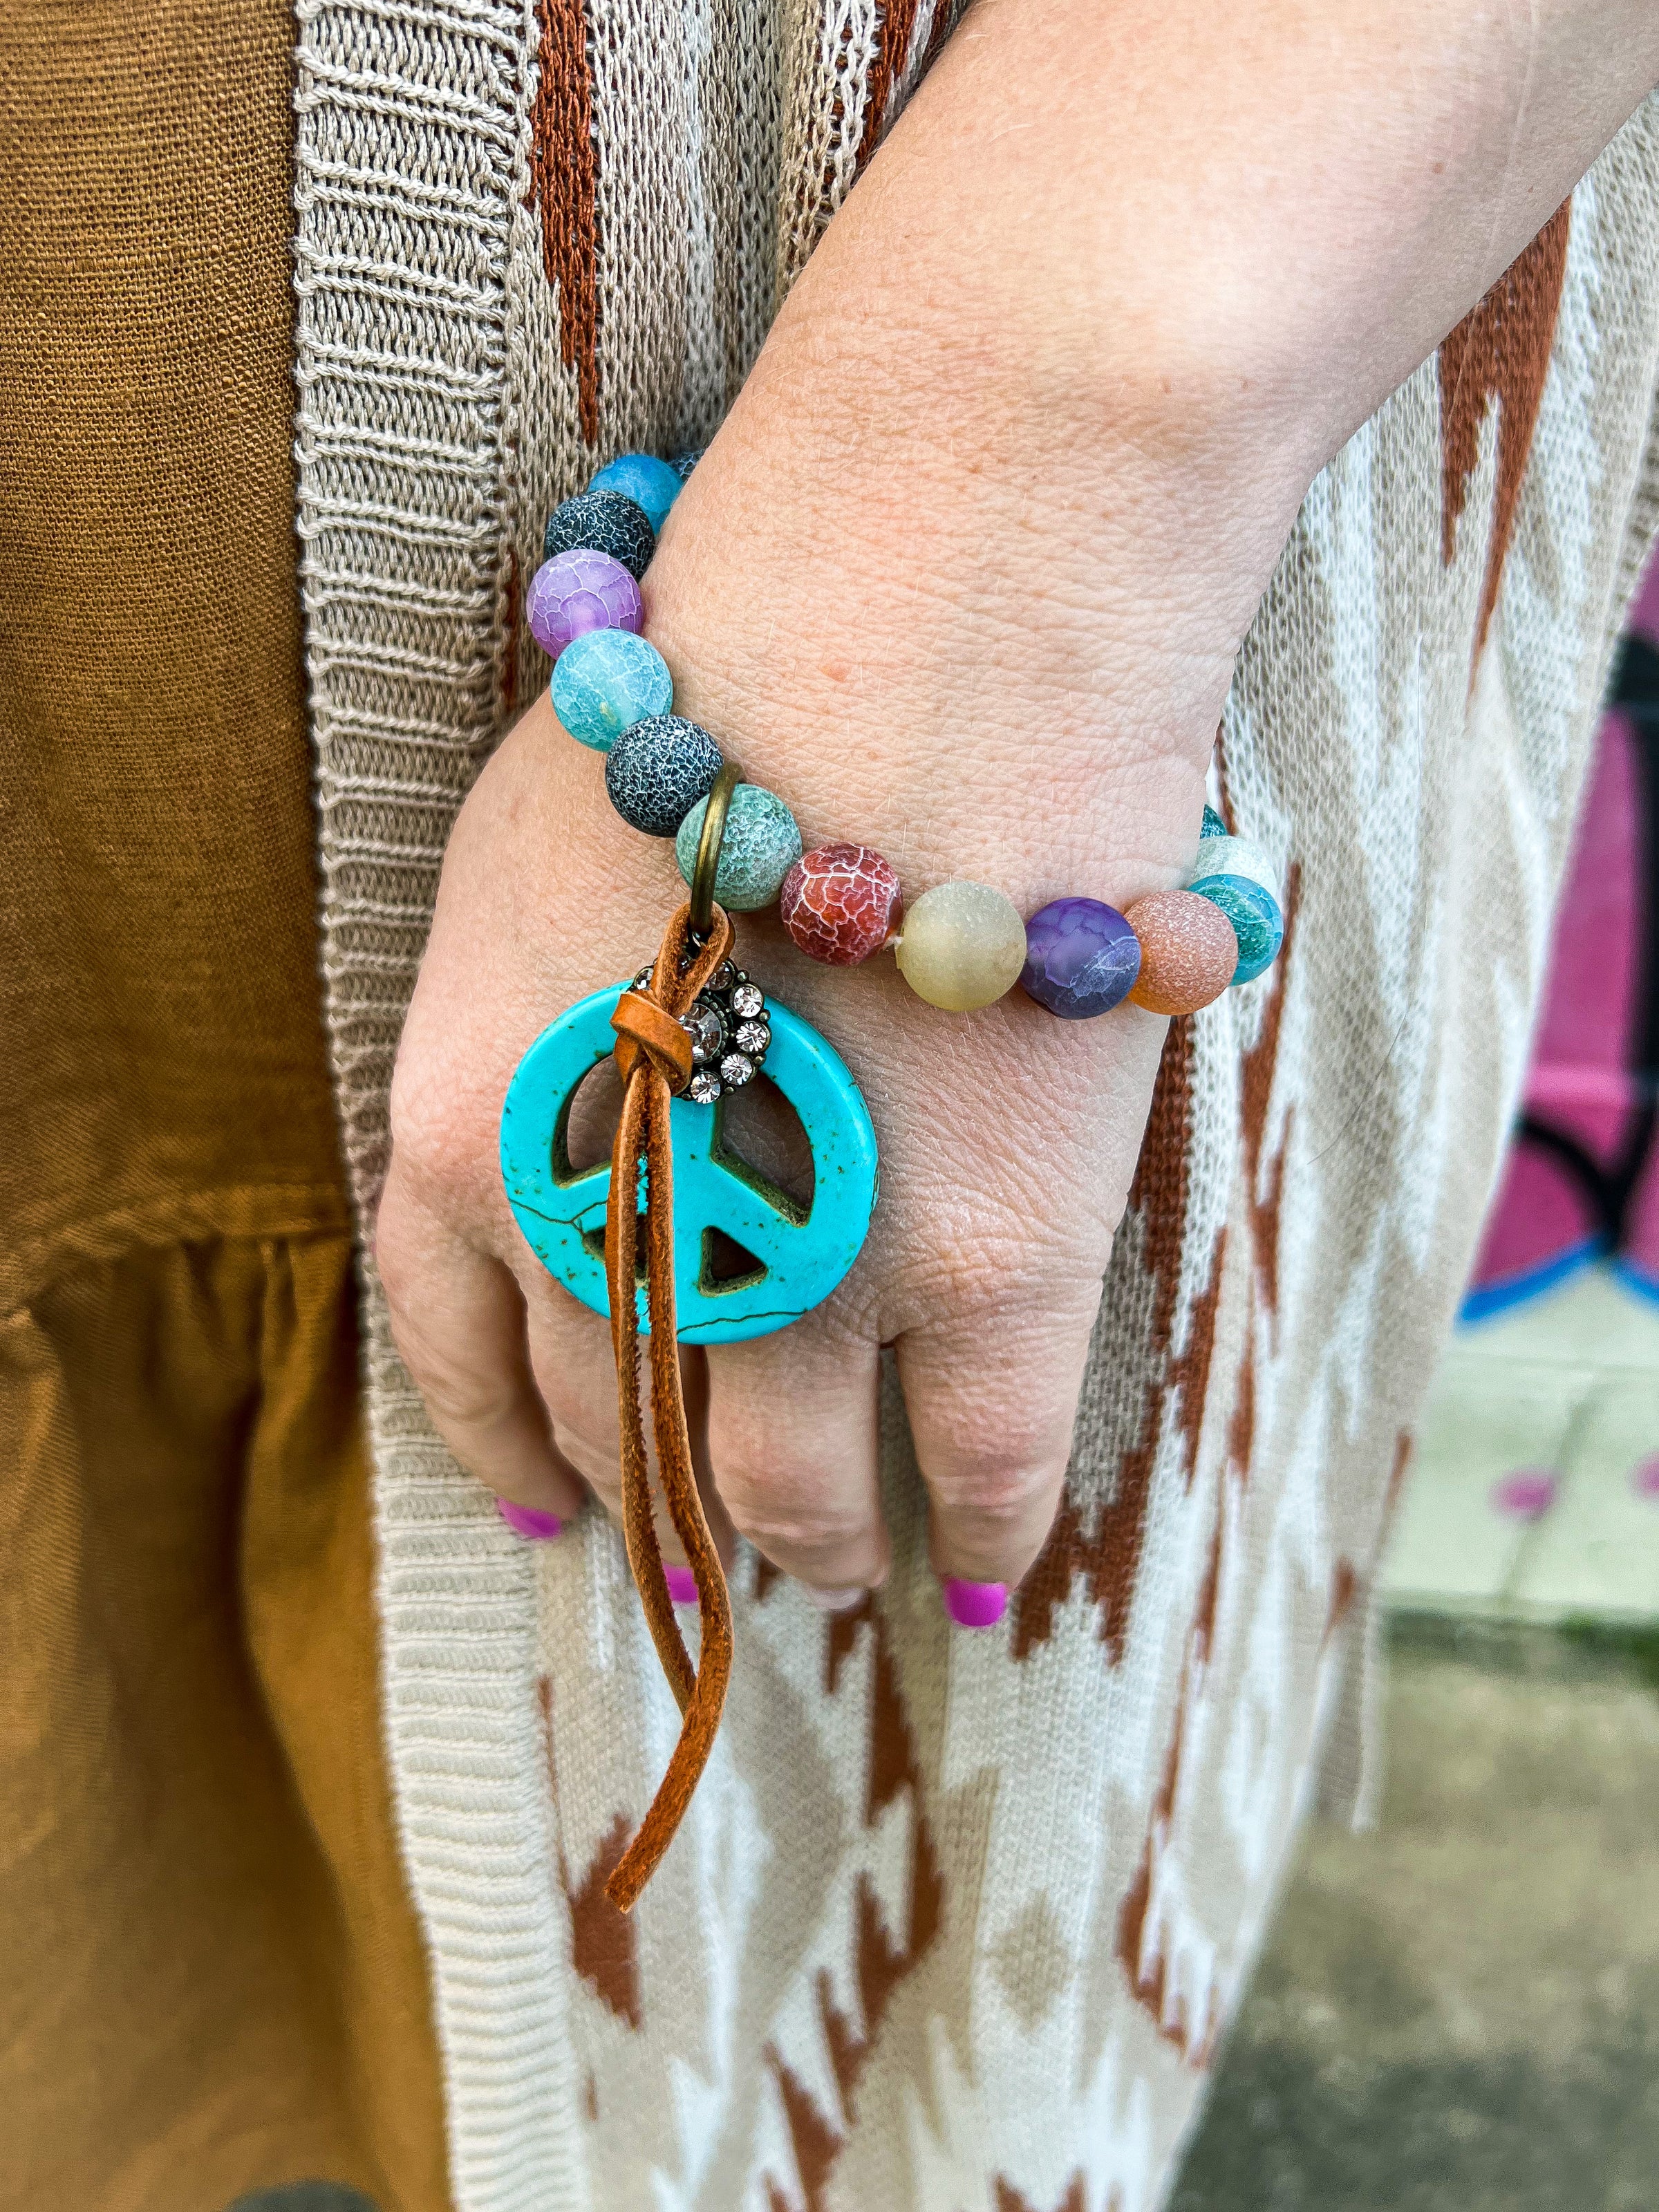 Premium Photo | Red hippie bracelet on stones